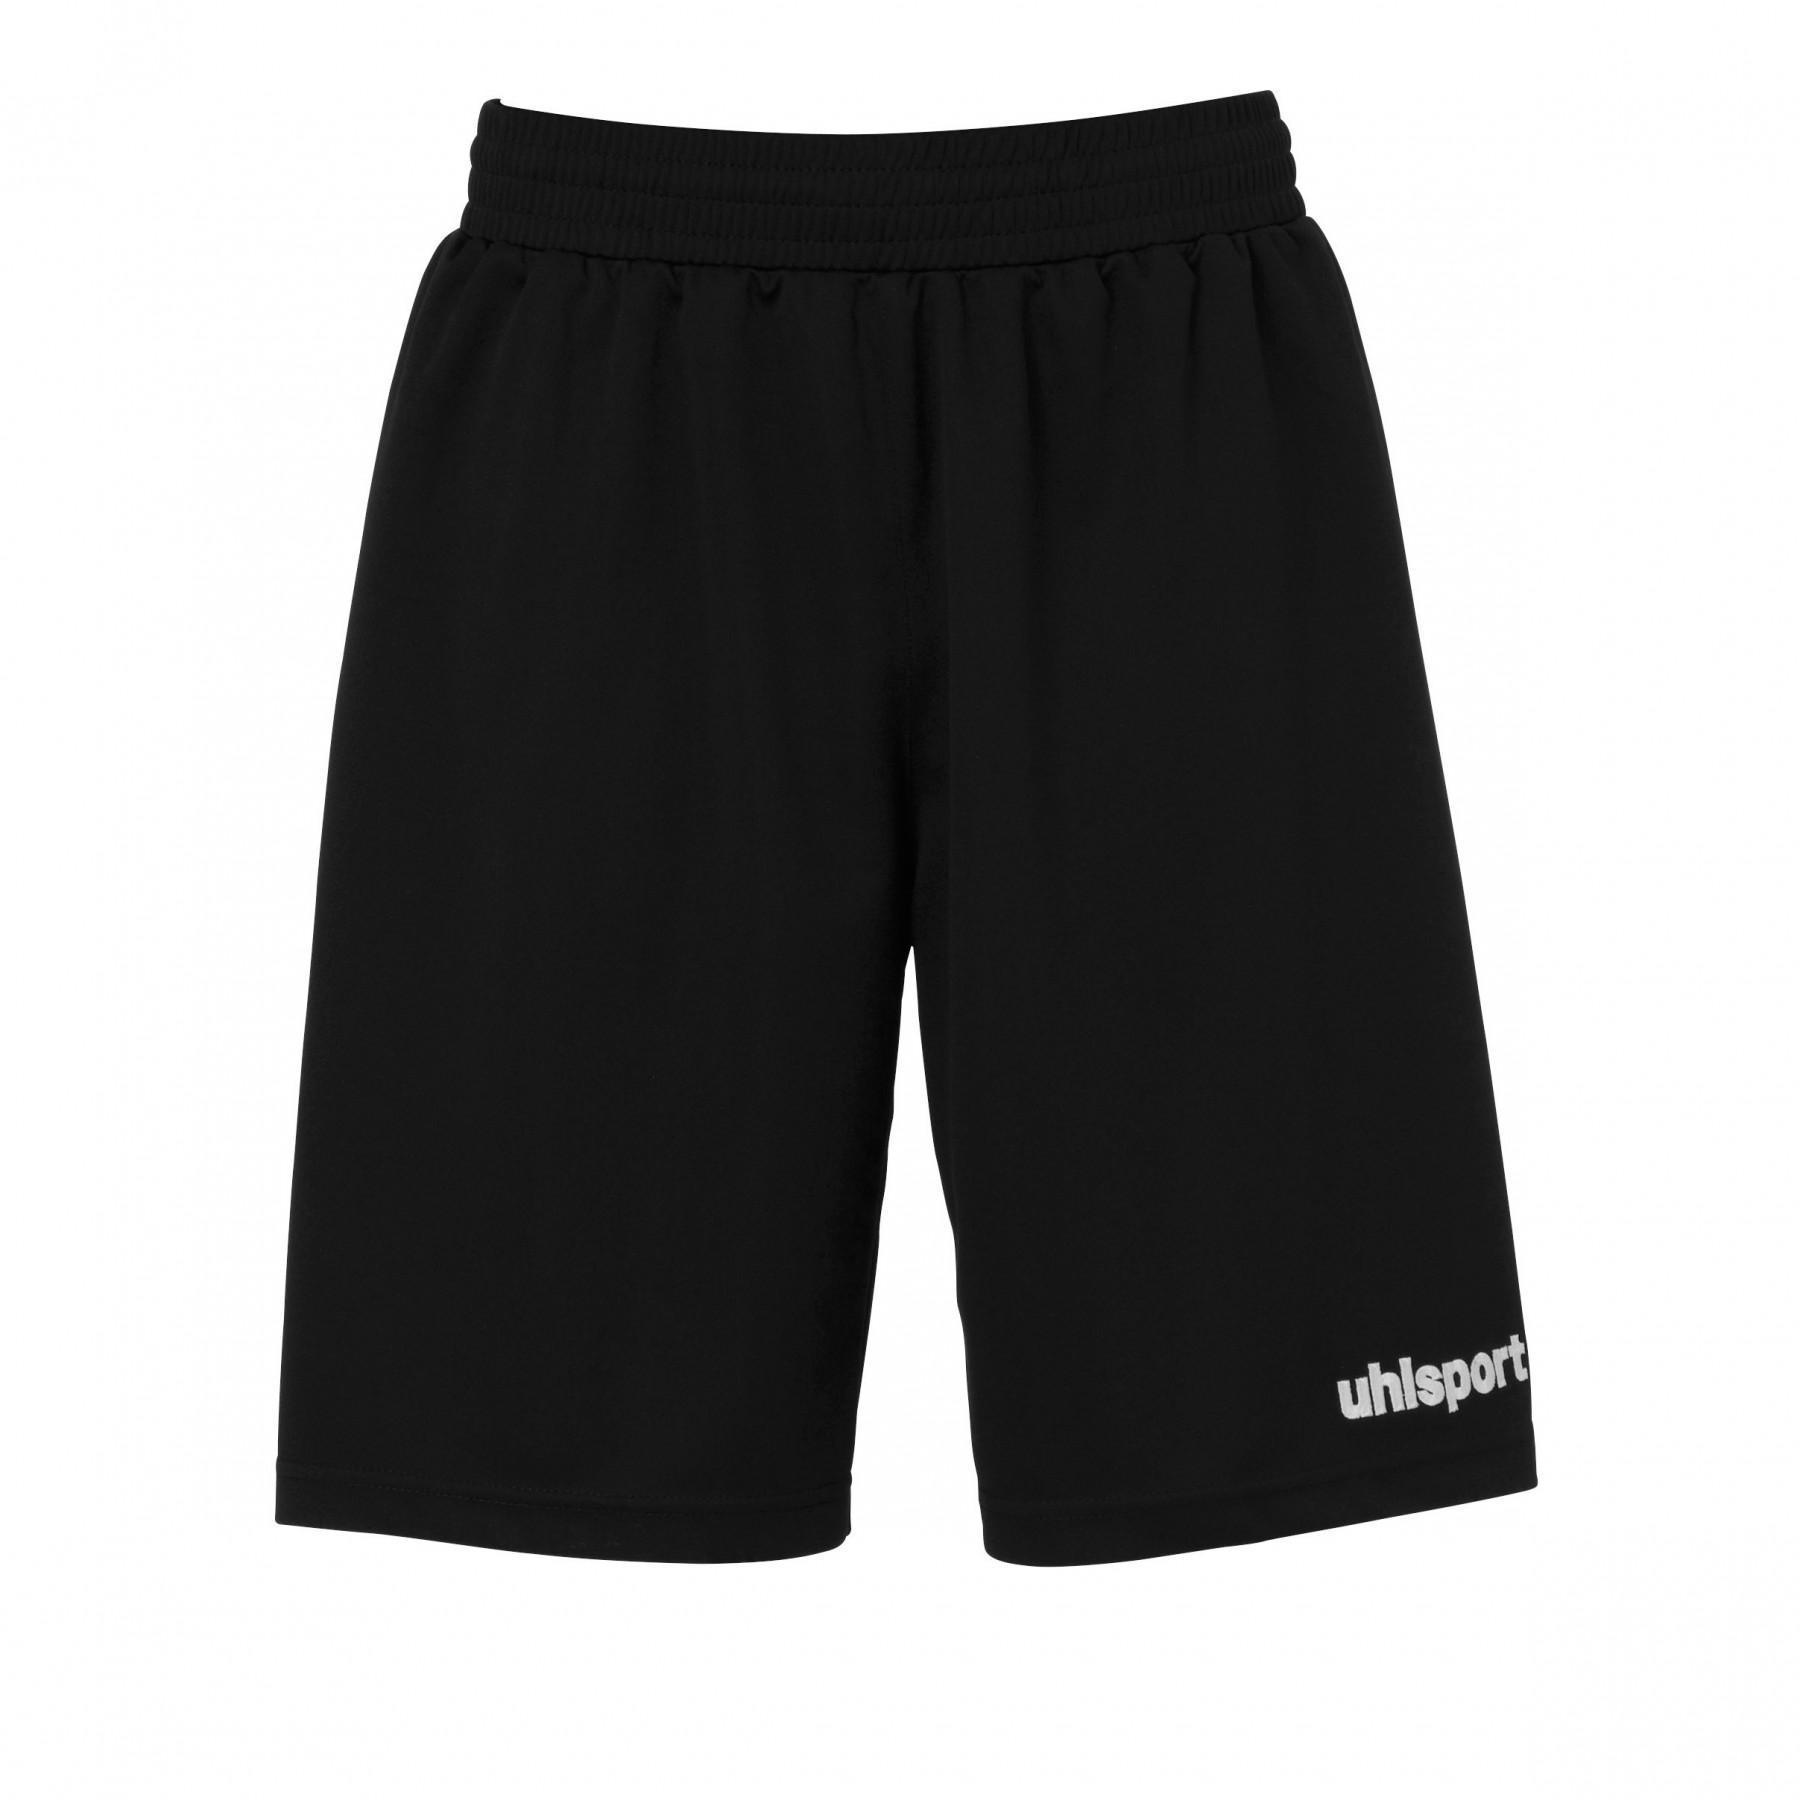 Goalkeeper shorts Uhlsport Basic